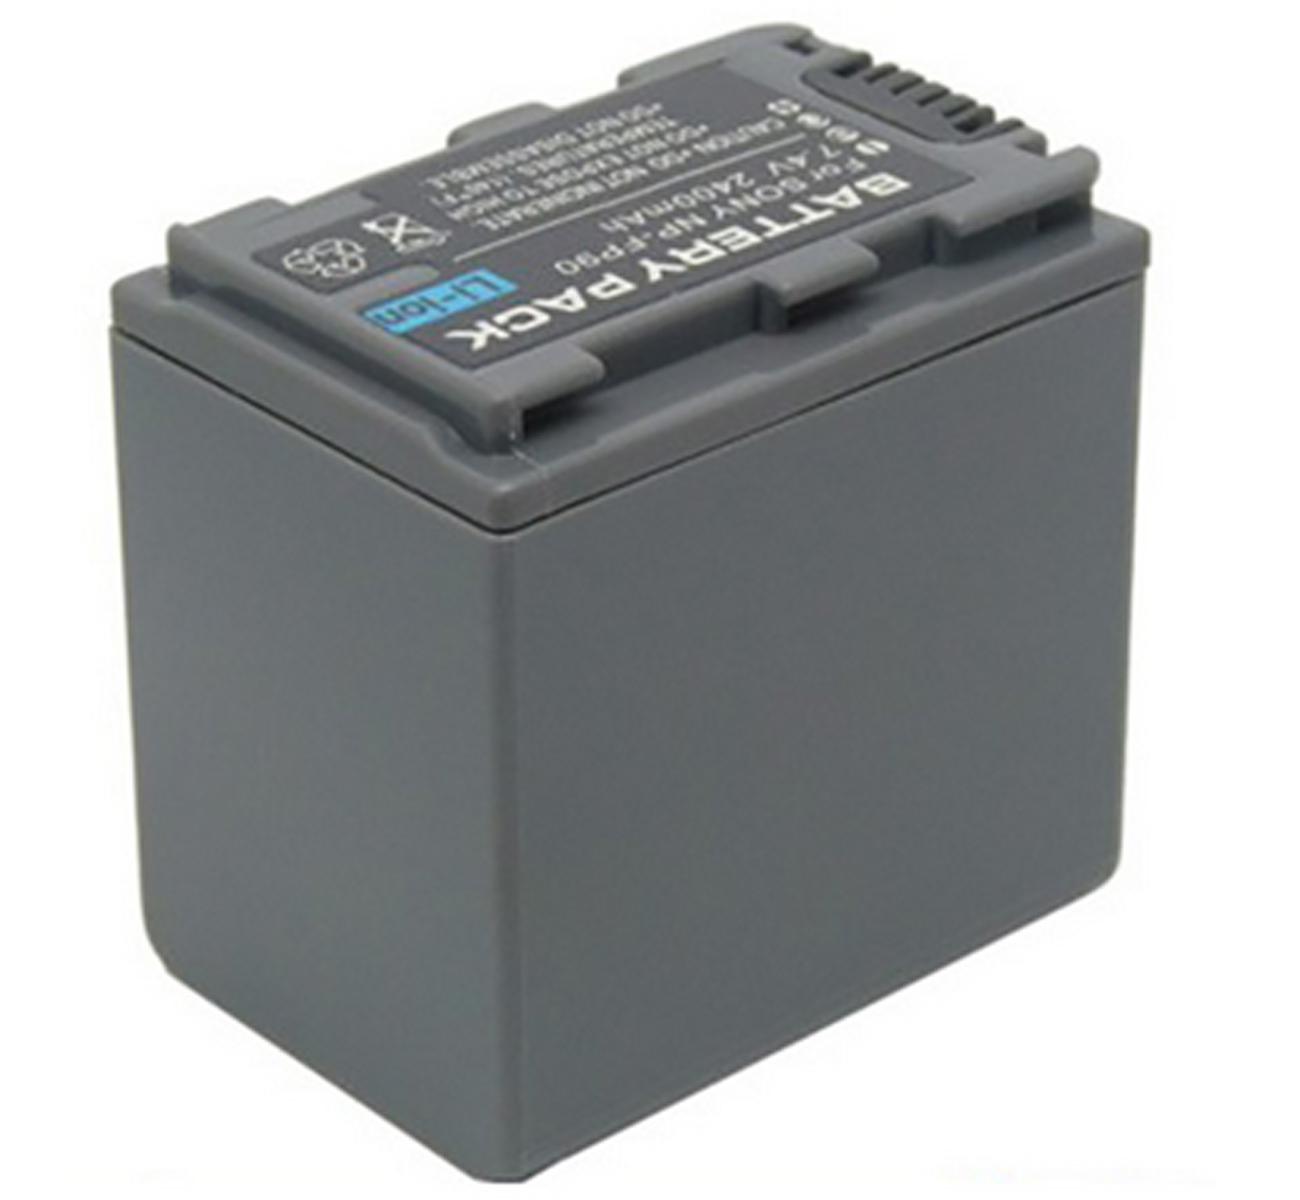 Изображение товара: Аккумуляторная батарея для sony DCR-DVD92E, DCR-DVD92, DCR-DVD103, DCR-DVD203, DCR-DVD403, DCR-DVD703, DCR-DVD803, DVD Handycam видеокамеры